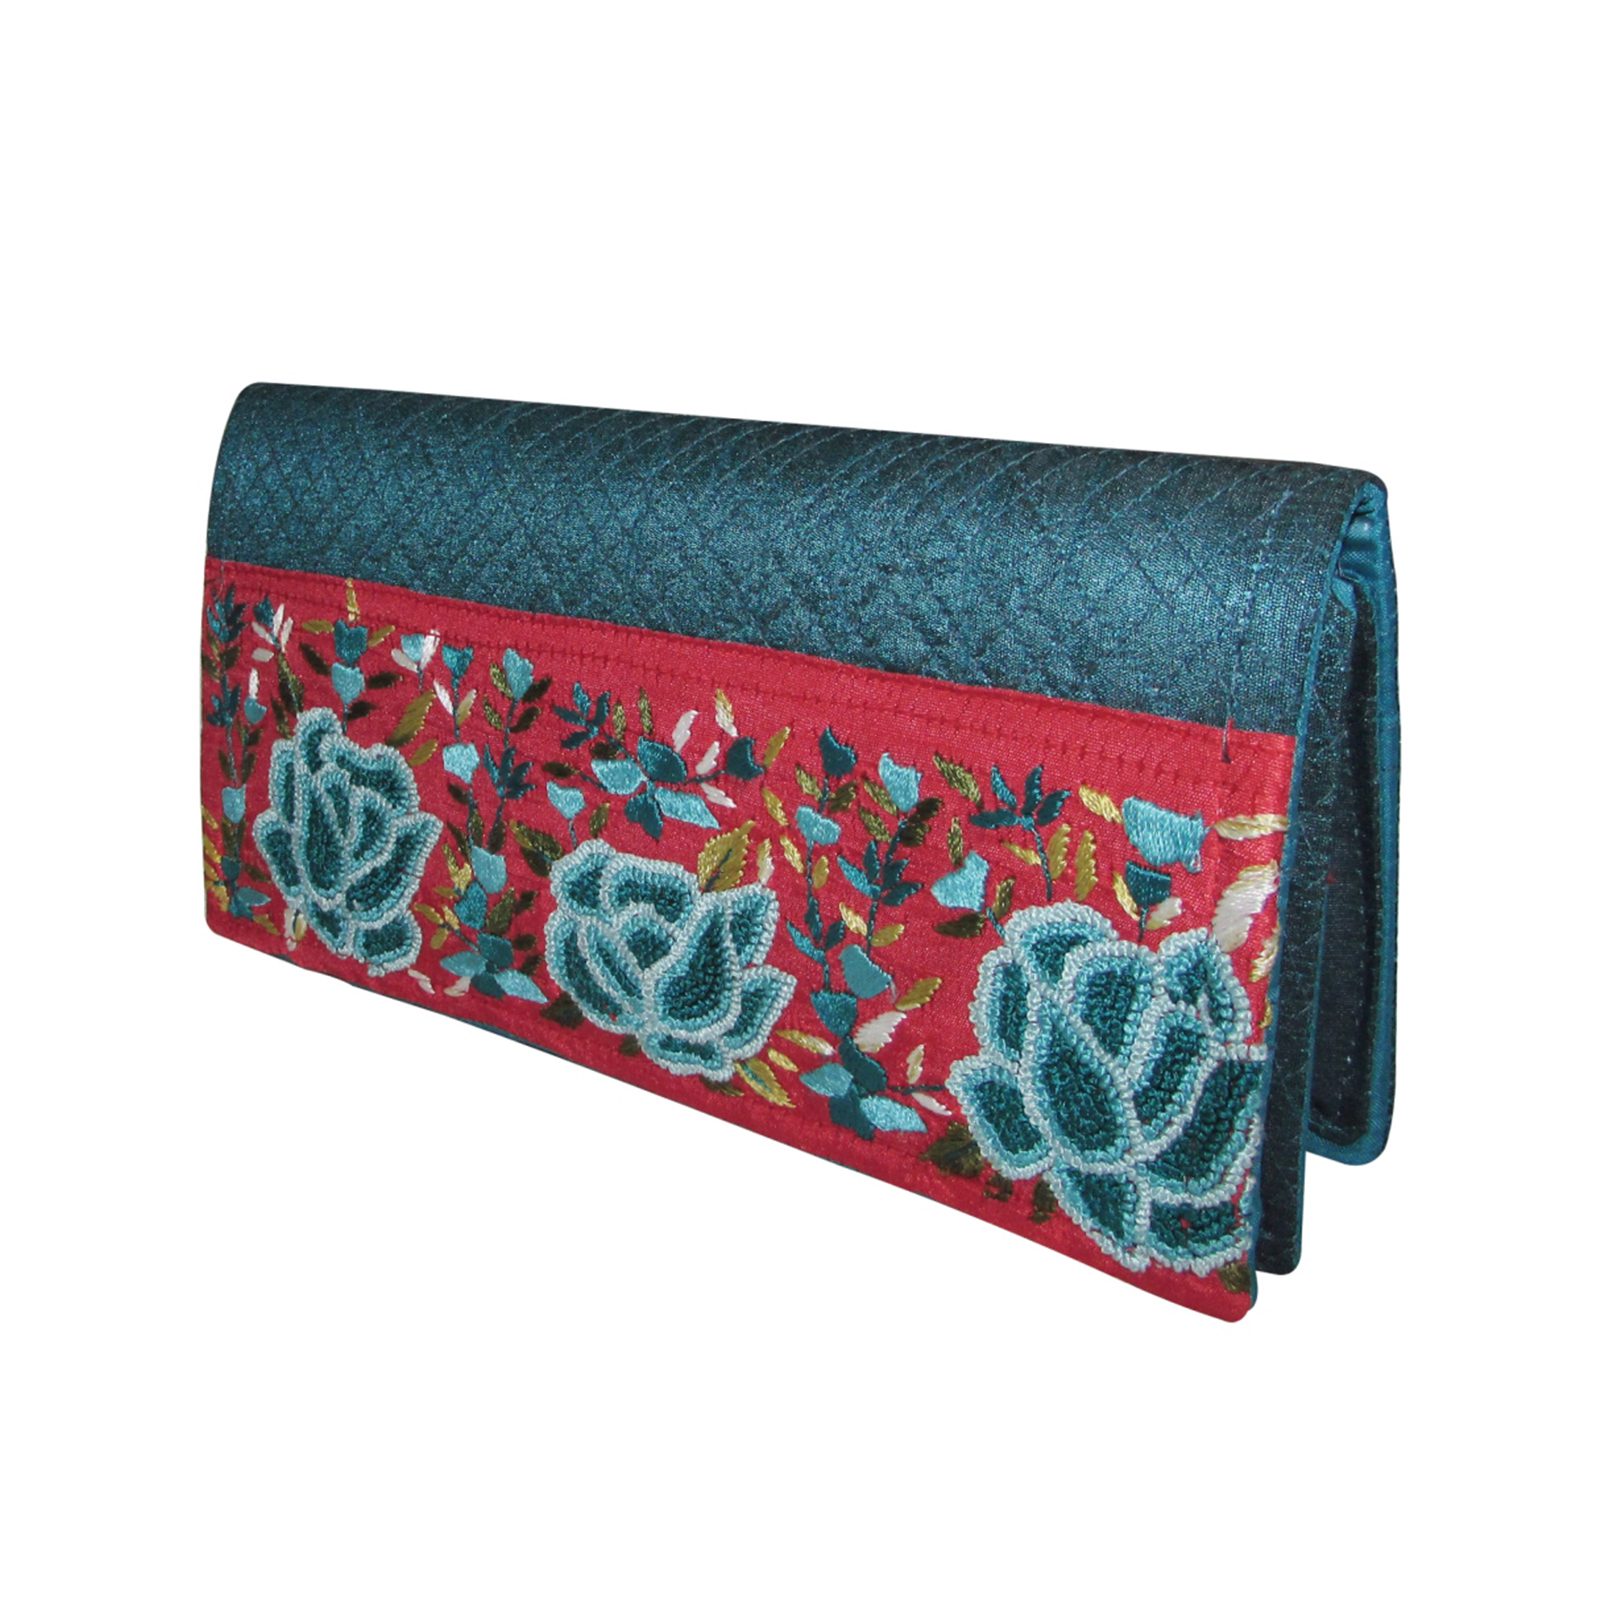 Buy women handmade designer clutch purse cum hand bag Online at Best Prices  in India - JioMart.